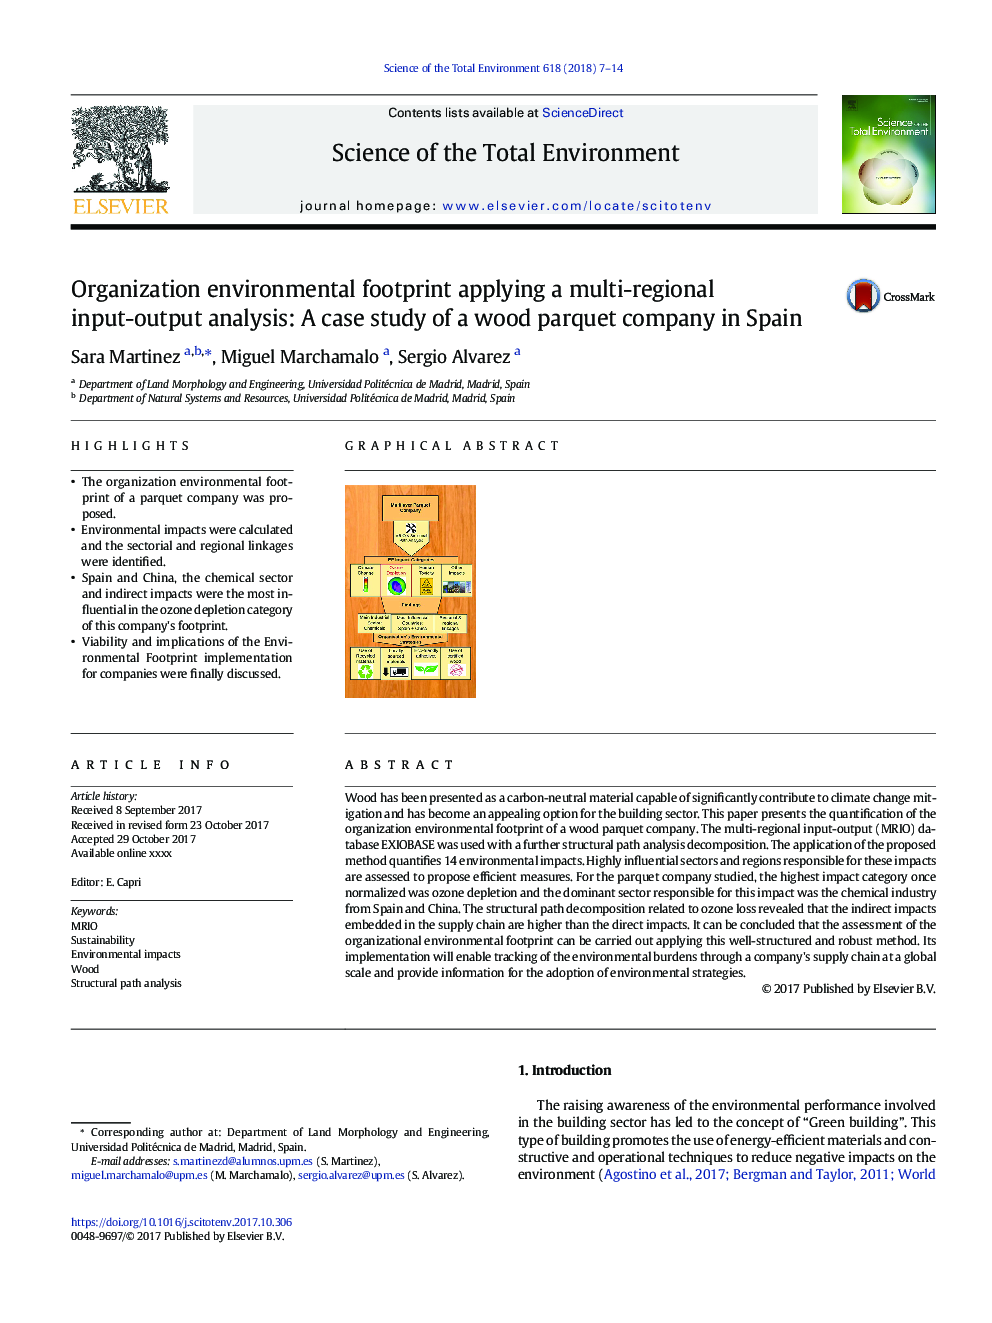 اثرات زیست محیطی سازمان با استفاده از تجزیه و تحلیل ورودی-خروجی چند منطقه ای: مطالعه موردی یک شرکت چوب پارکت در اسپانیا 